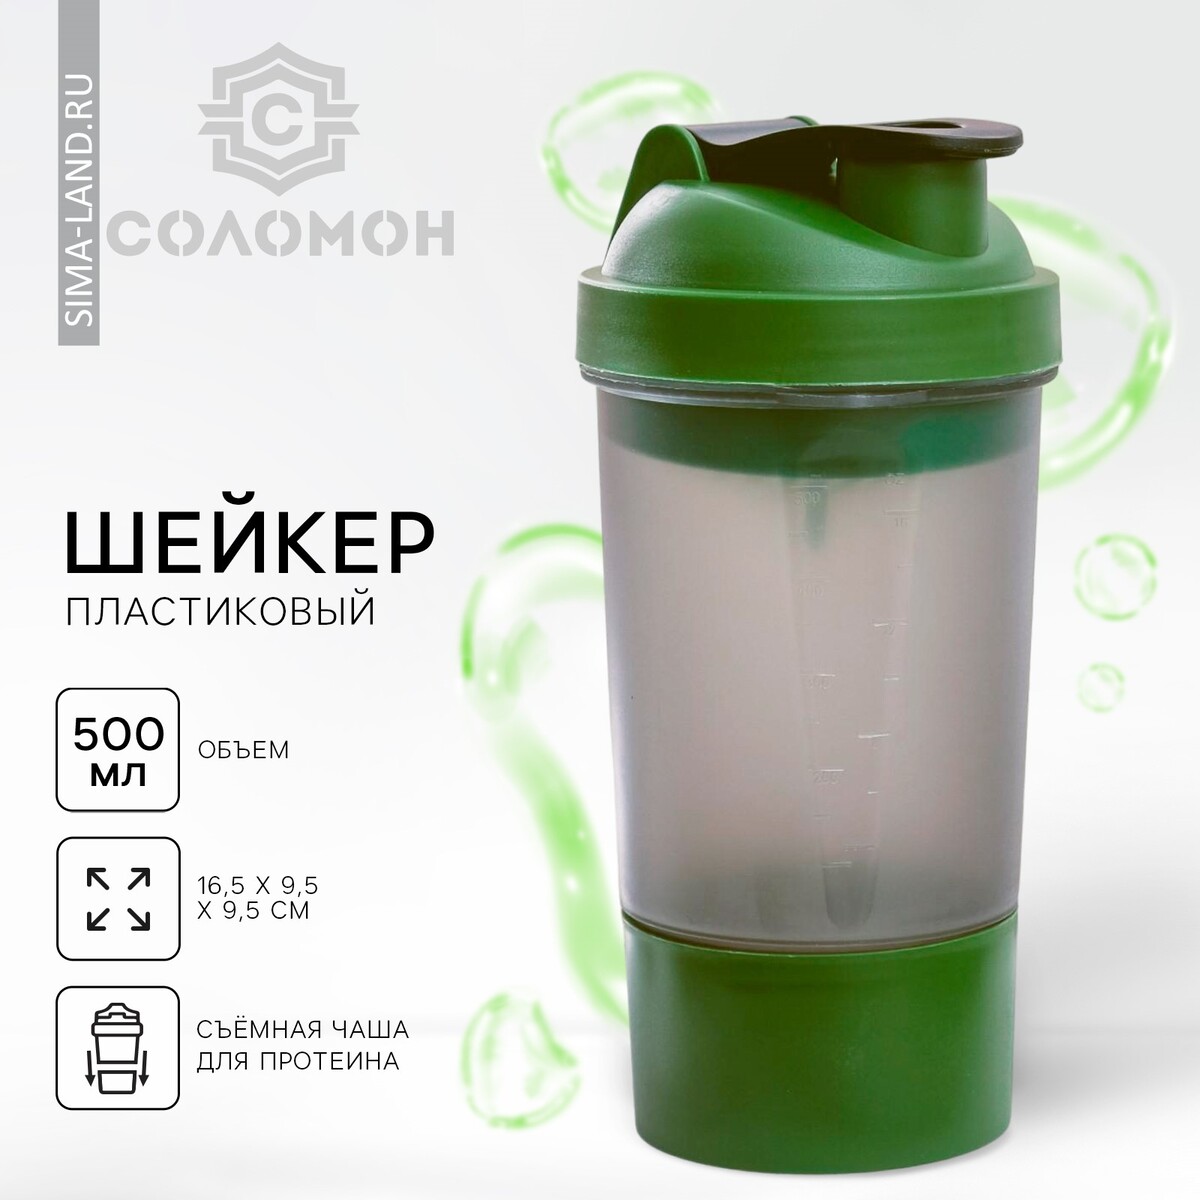 Шейкер спортивный с чашей под протеин, серо-зеленый, 500 мл настольный футбол weekend greenwood 139x73x88 см 51 165 05 0 серо зеленый